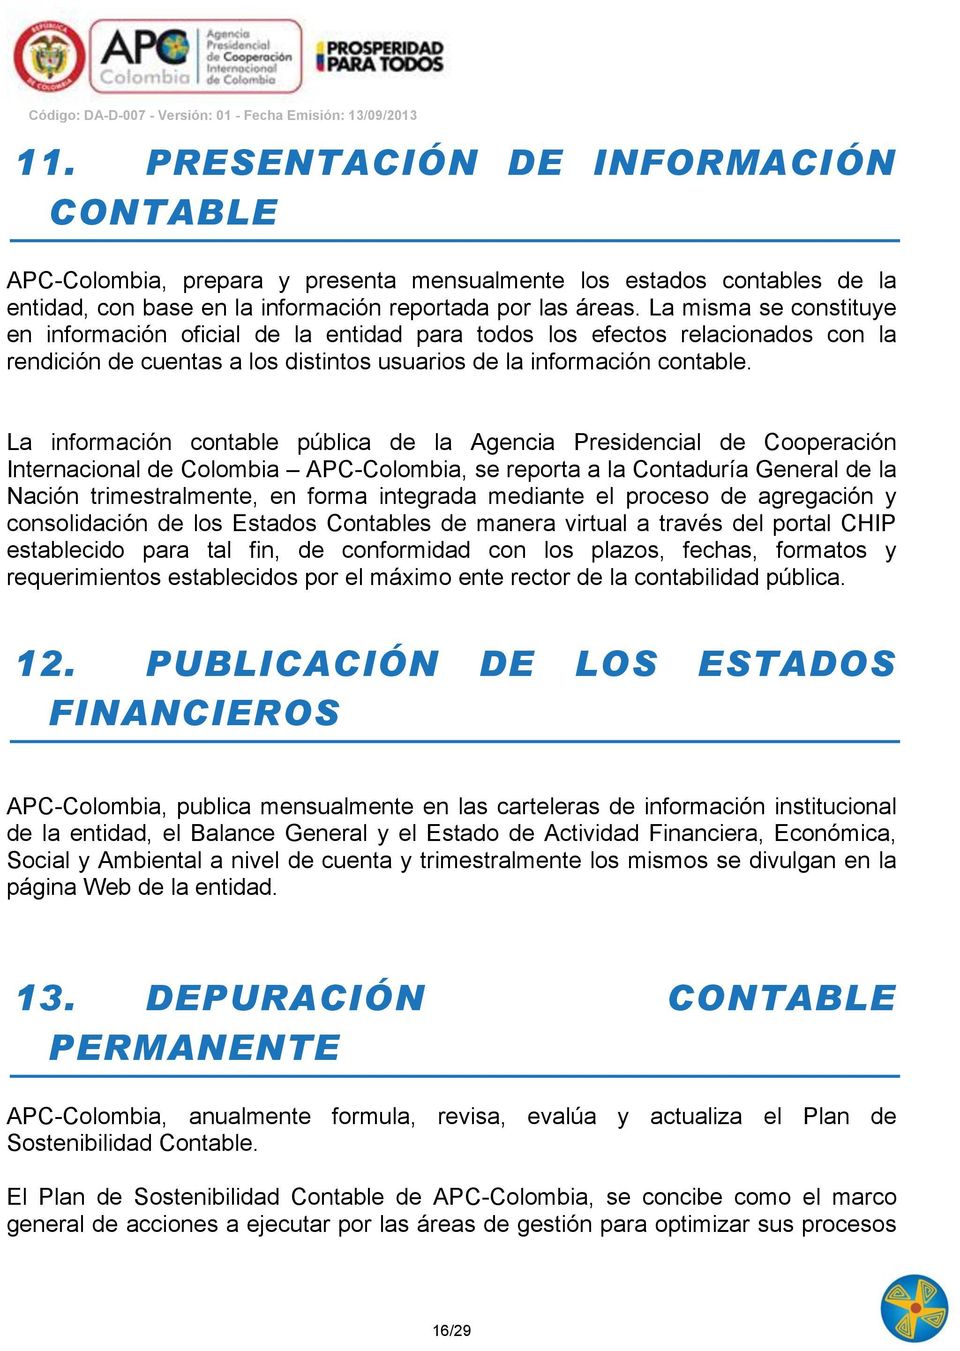 La información contable pública de la Agencia Presidencial de Cooperación Internacional de Colombia APC-Colombia, se reporta a la Contaduría General de la Nación trimestralmente, en forma integrada